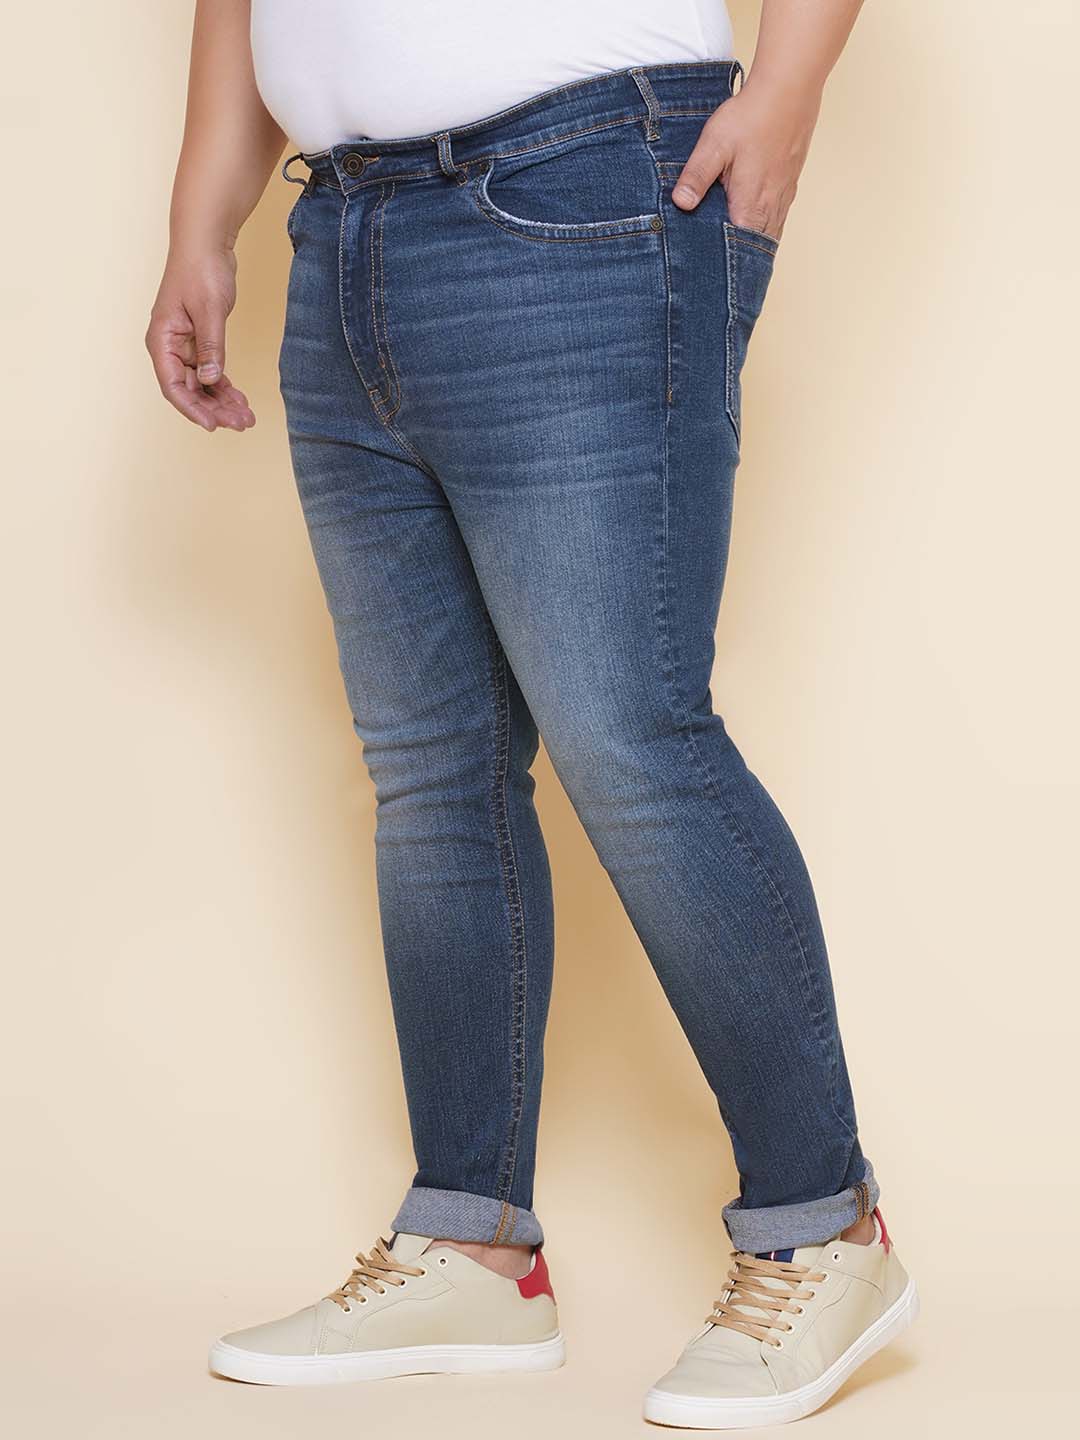 bottomwear/jeans/JPJ12422/jpj12422-4.jpg